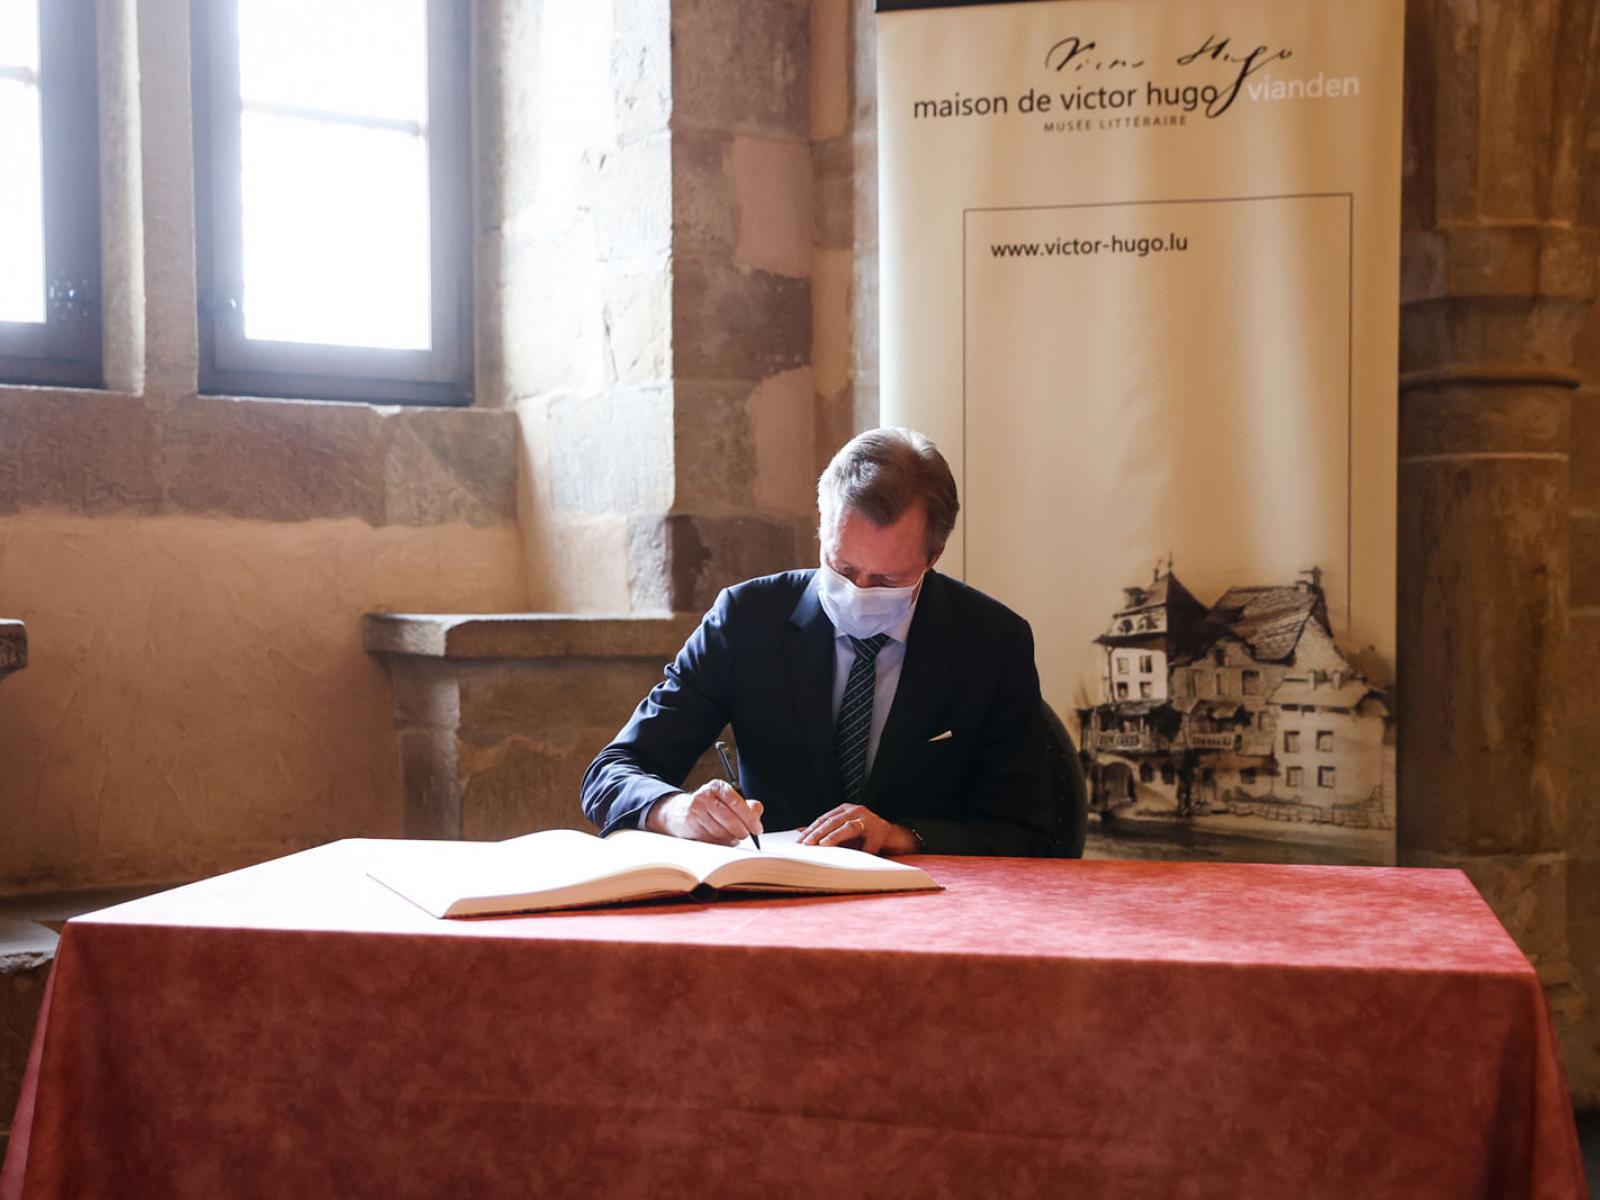 Le Grand-Duc signe le livre d'or